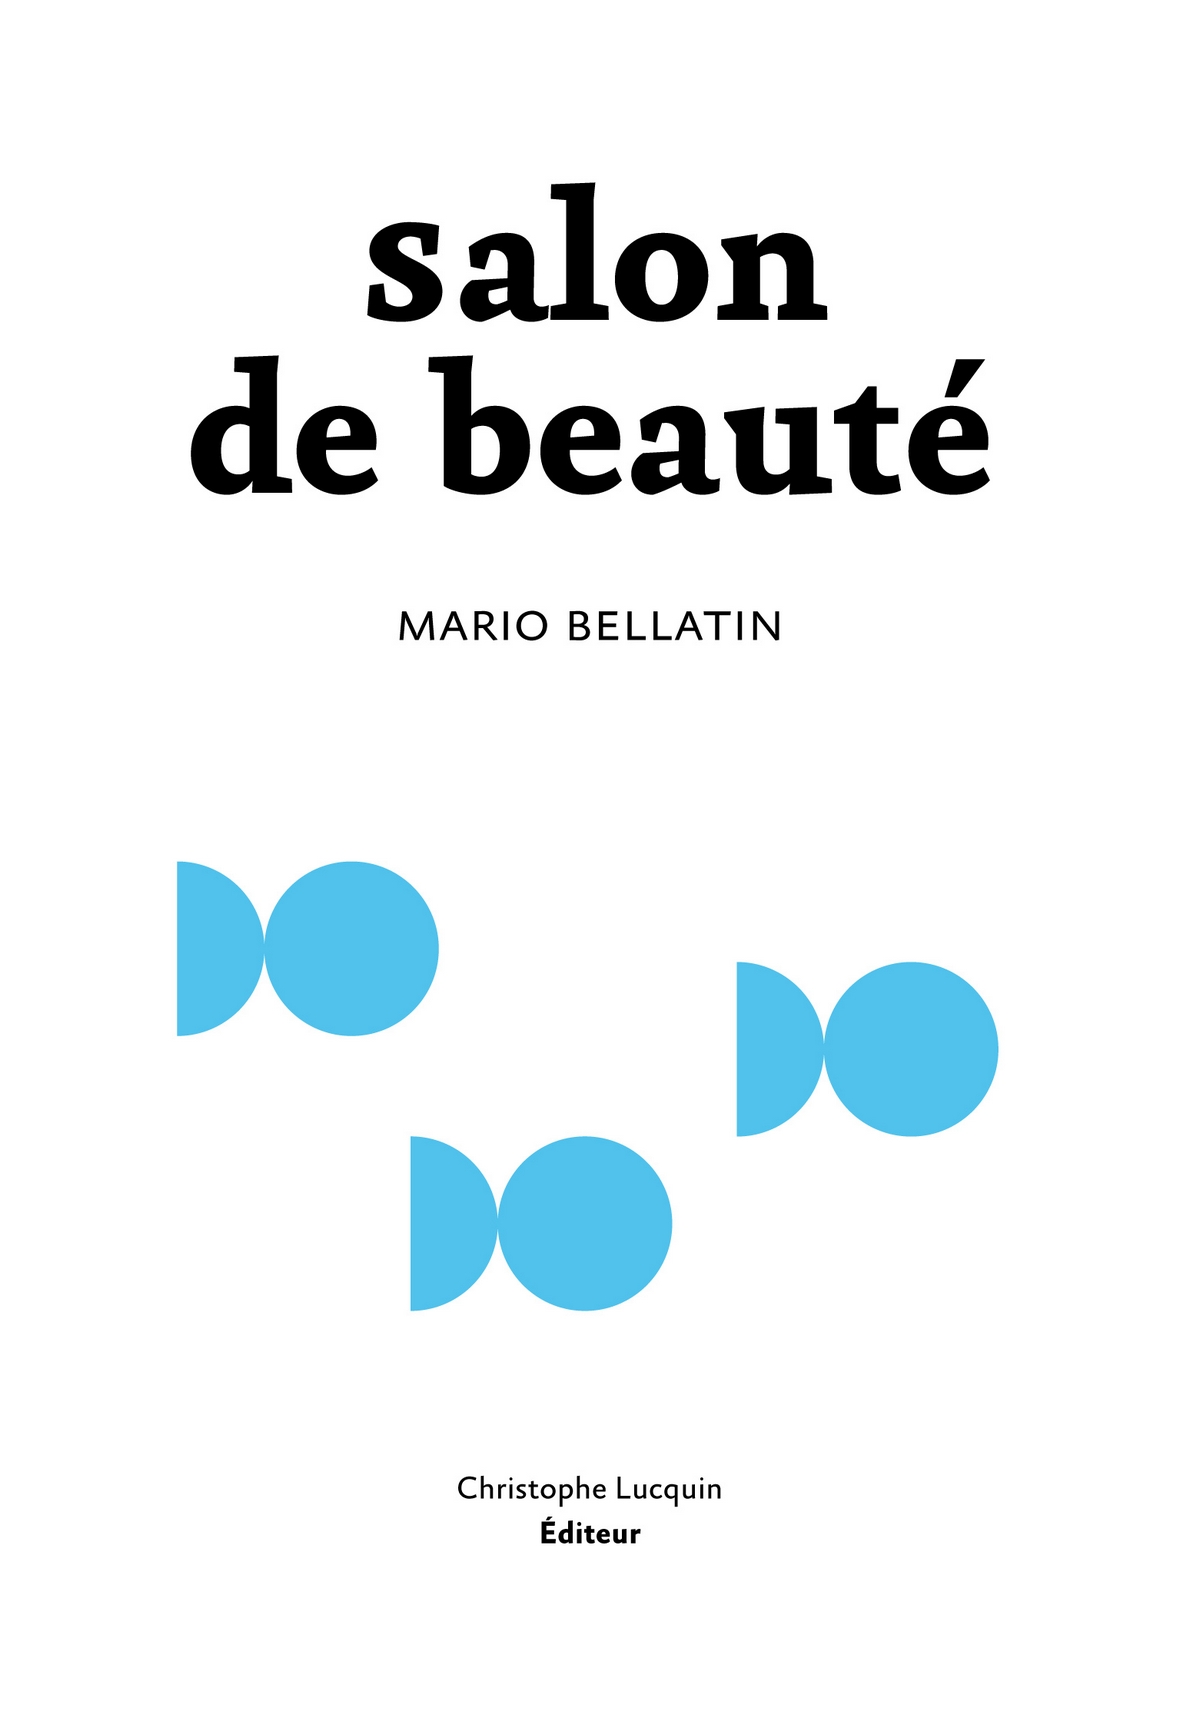 Salon de beauté mario bellatin christophe lucquin editeur heteroclite mai 2014